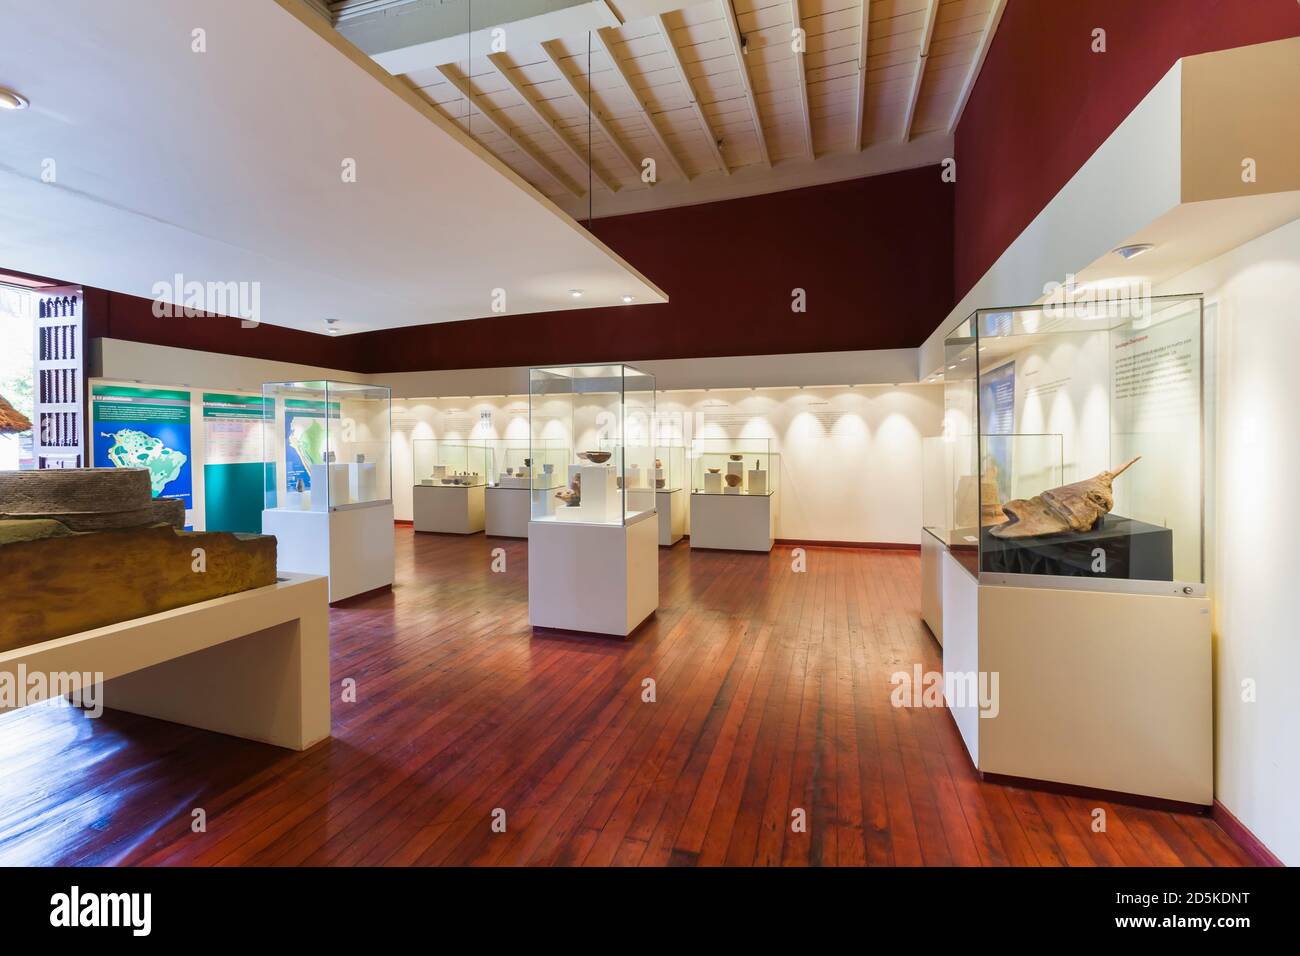 Die Amazonas-Kultur-Sammlungsgalerie, "Nationales Museum für Archäologie, Anthropologie und Geschichte Perus", Lima, Peru, Südamerika Stockfoto